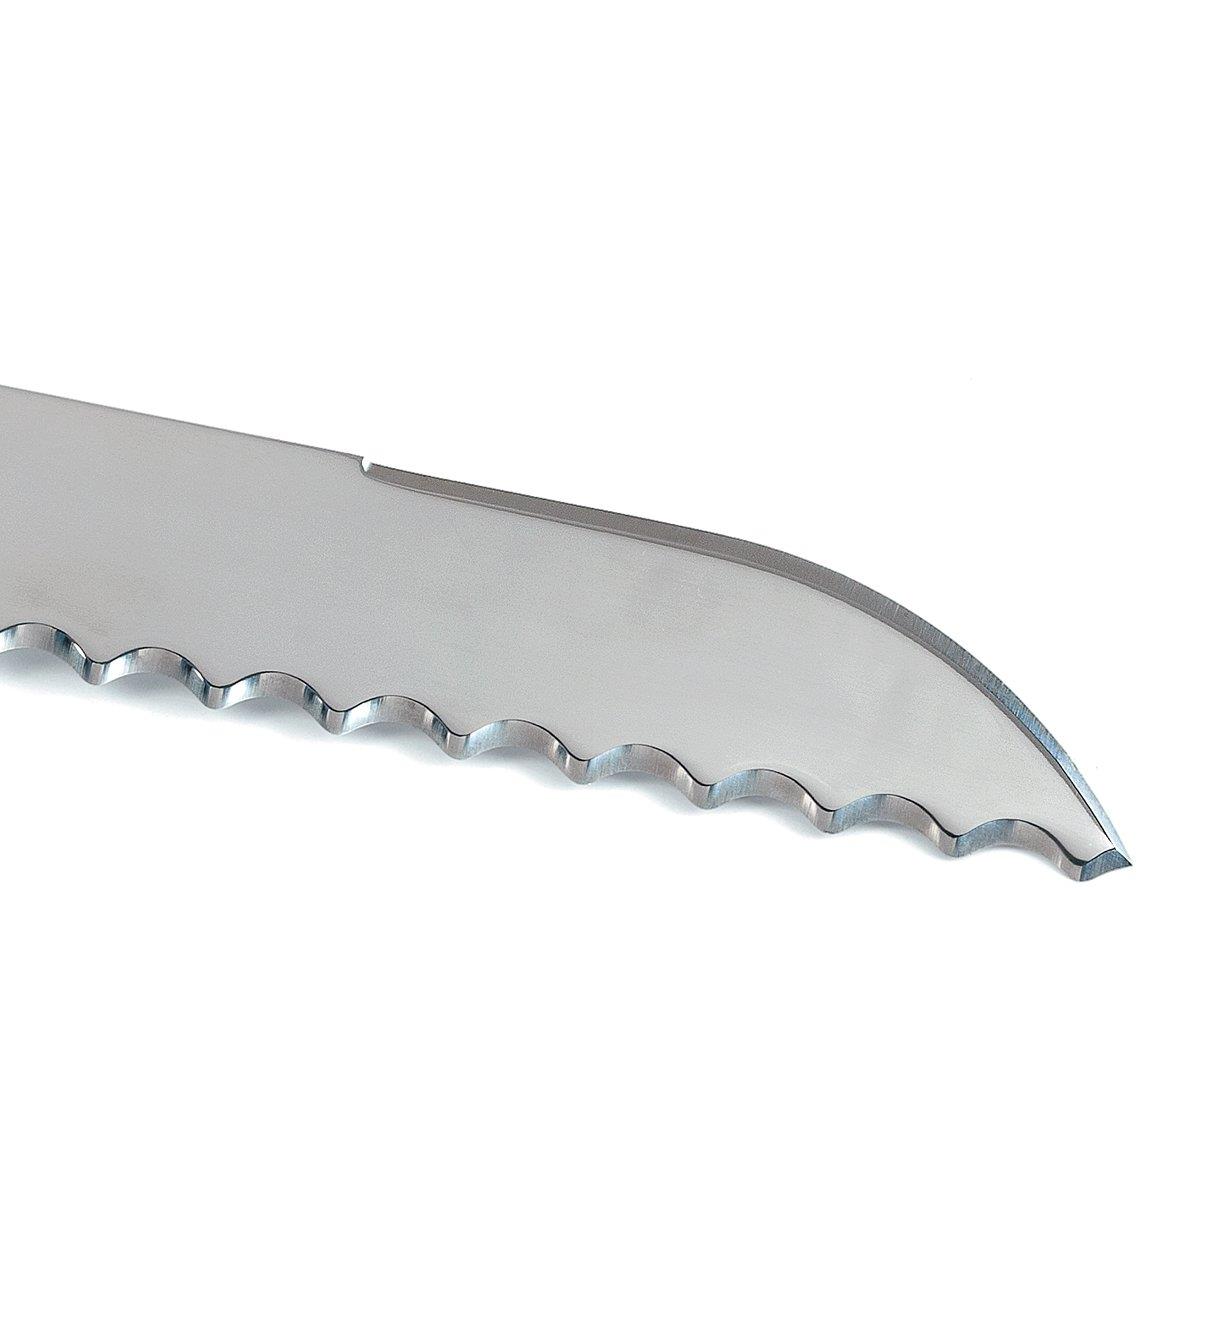 Gros plan du tranchant à l'extrémité du dos de la lame du couteau pour gazon en plaques